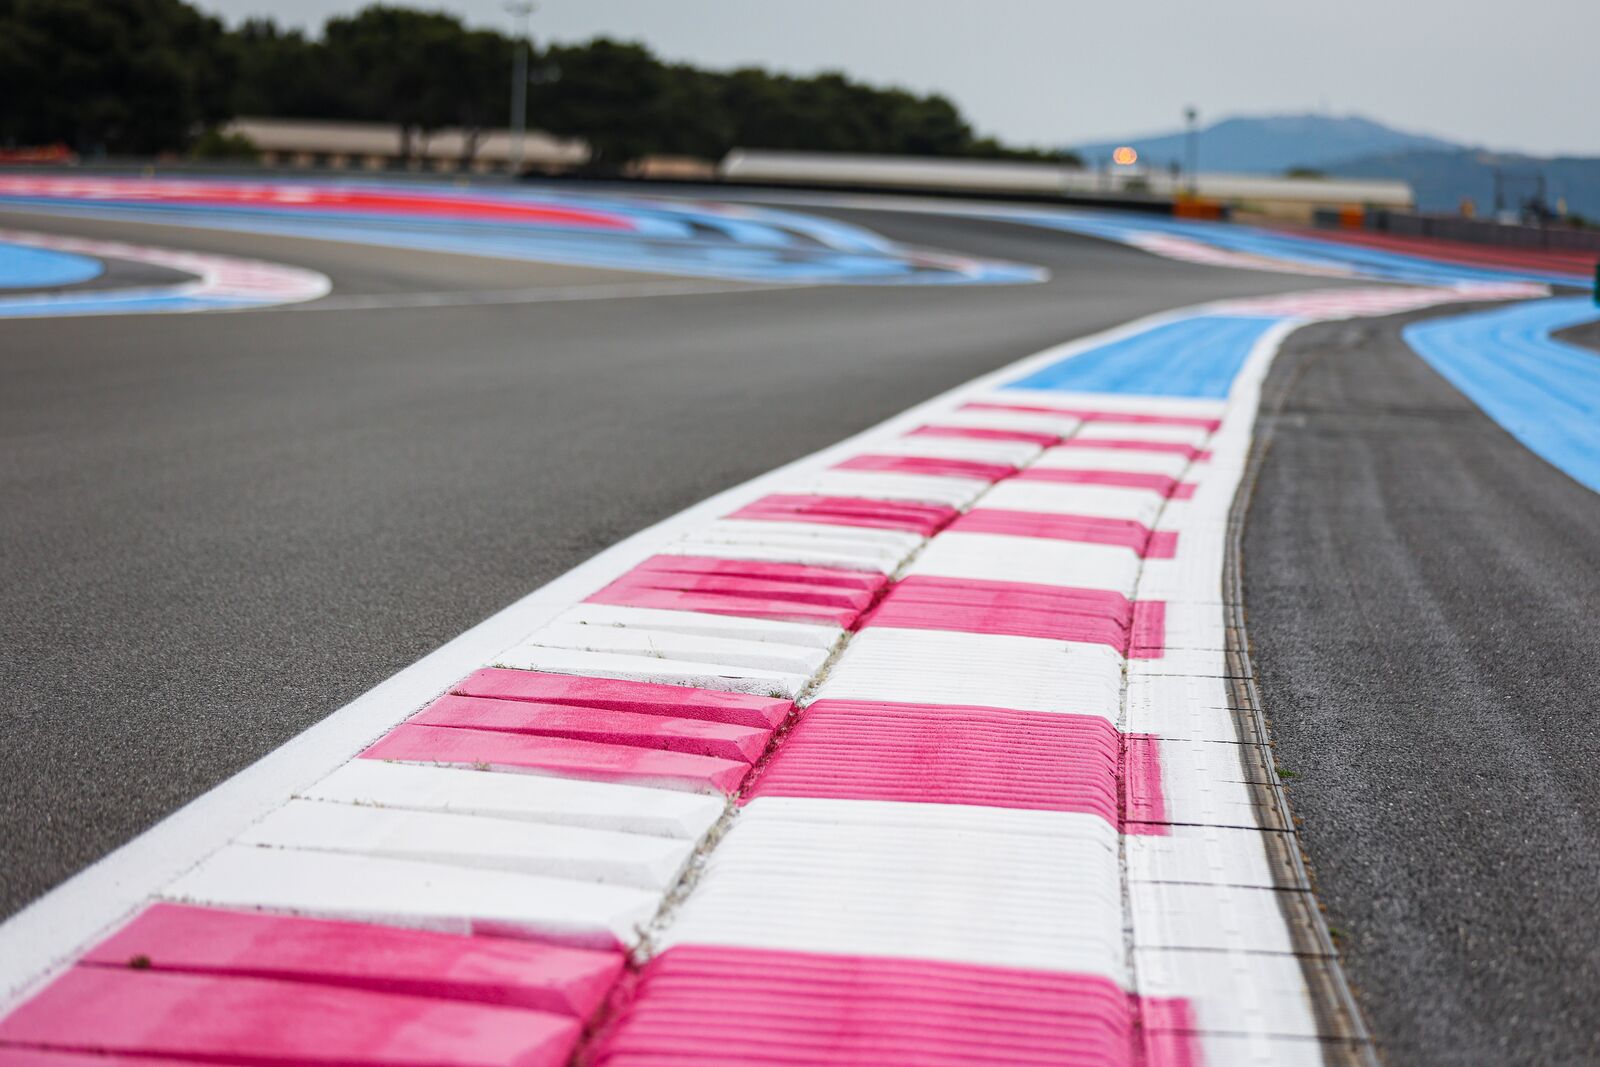 F1 - Météo GP de France F1 : Température de piste supérieure à 55°C attendue